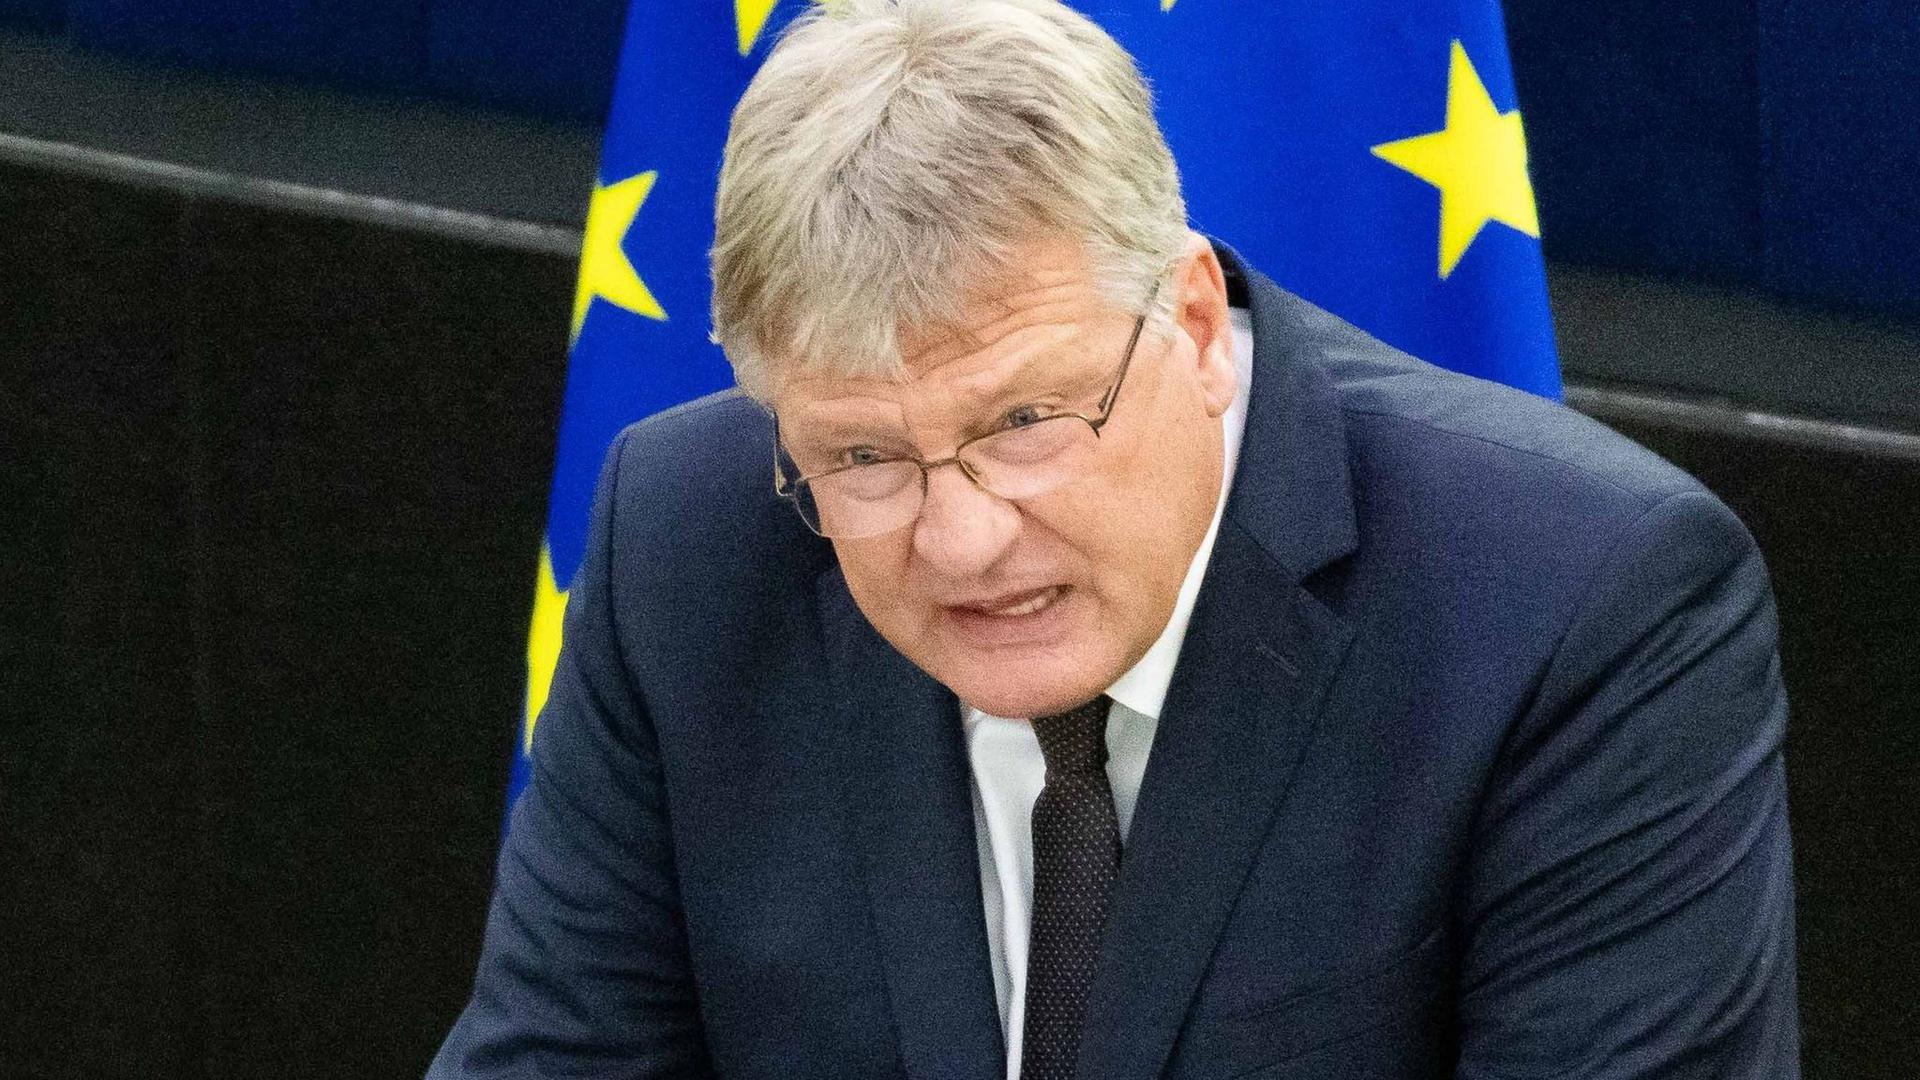 Das EU-Parlament hat dem fraktionslosen Europaabgeordneten und ehemaligen AfD-Vorsitzenden Jörg Meuthen die parlamentarische Immunität entzogen.